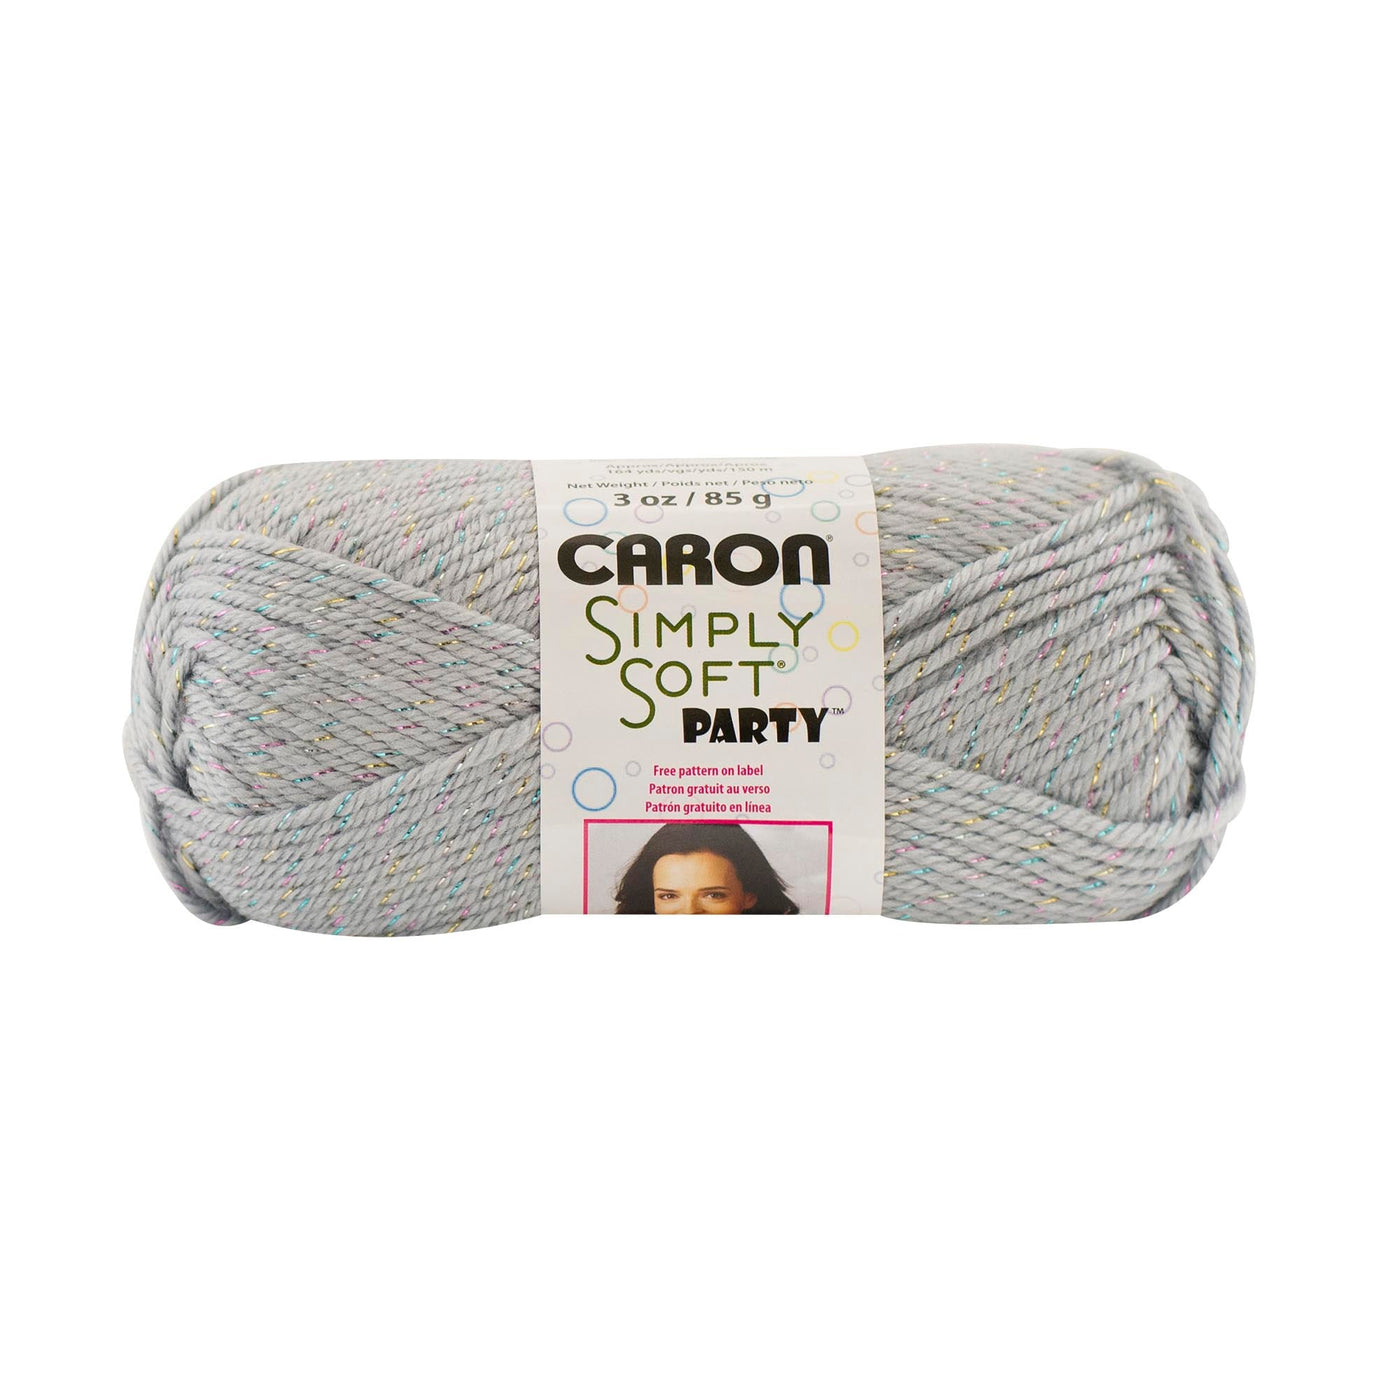 Caron Simply Soft Aran Yarn 85g - Party